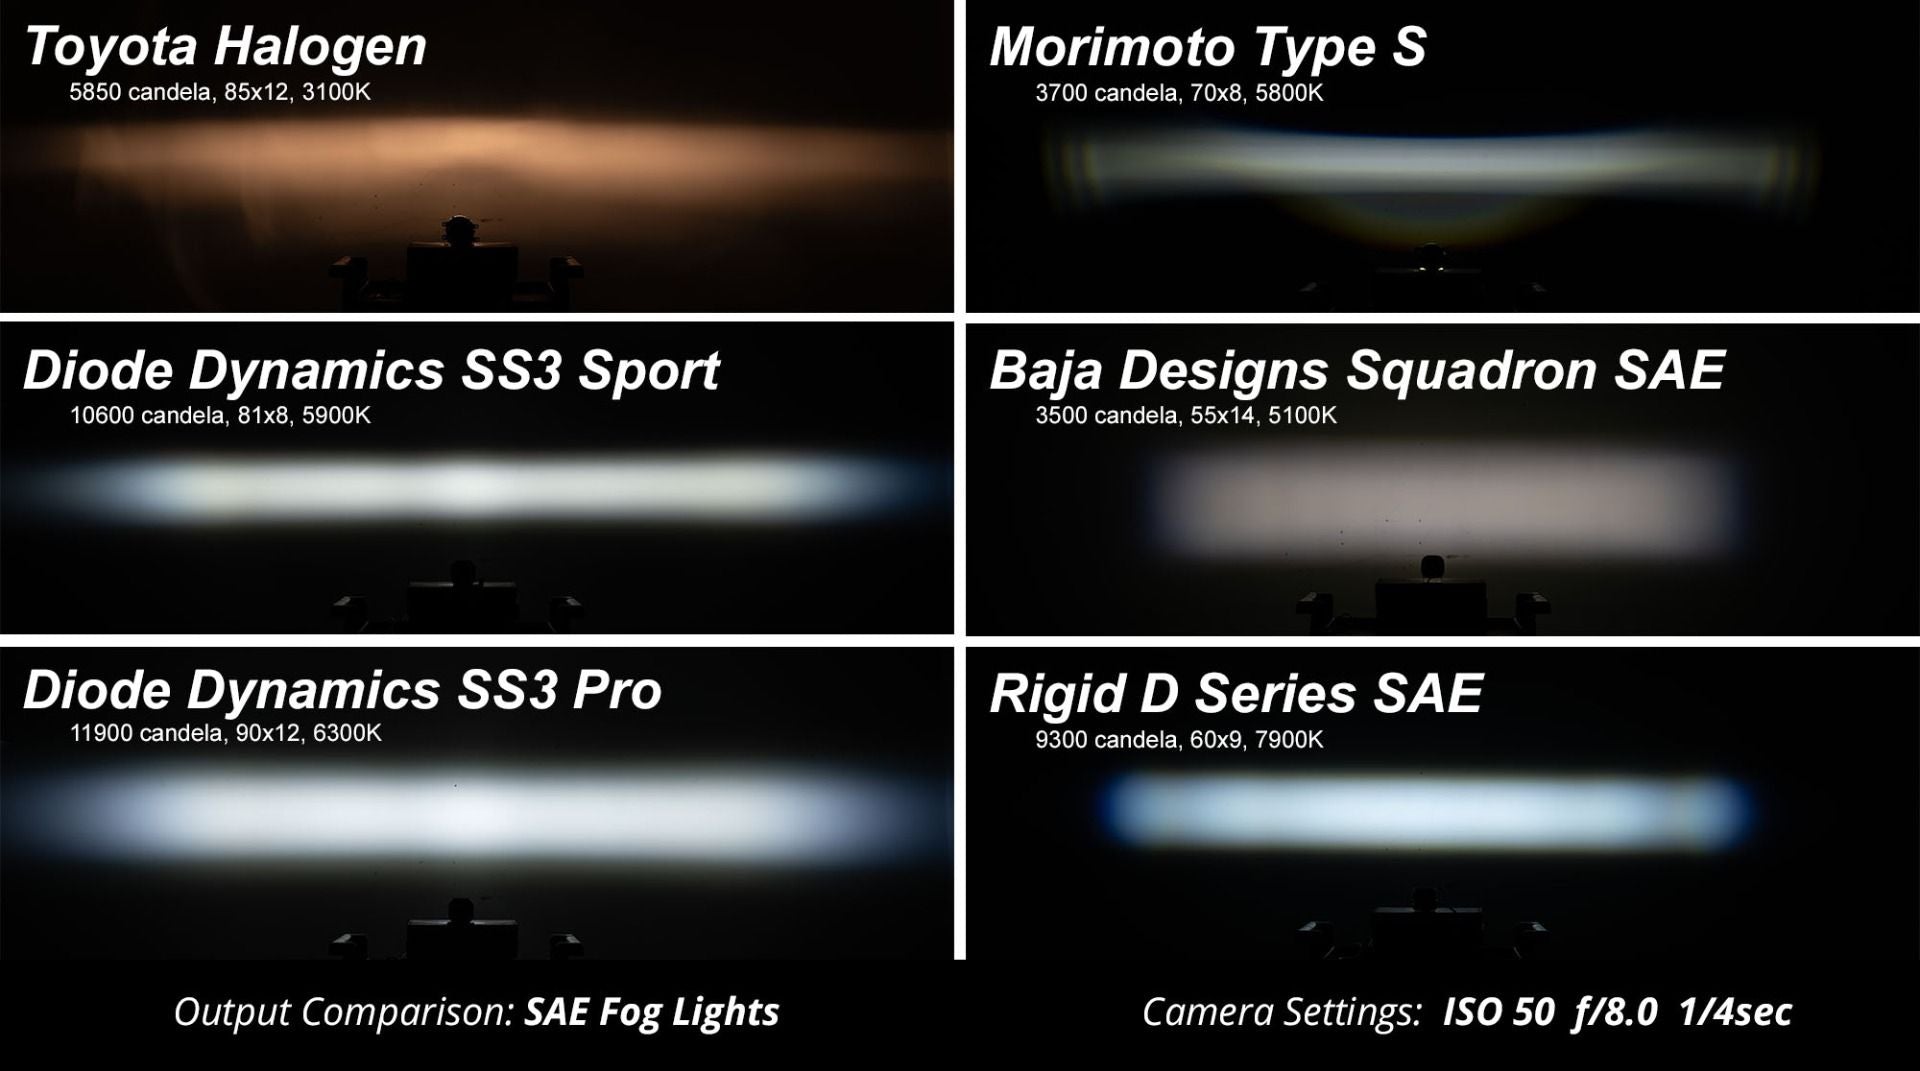 SS3 LED Fog Light Kit For 2010-2014 Honda Insight